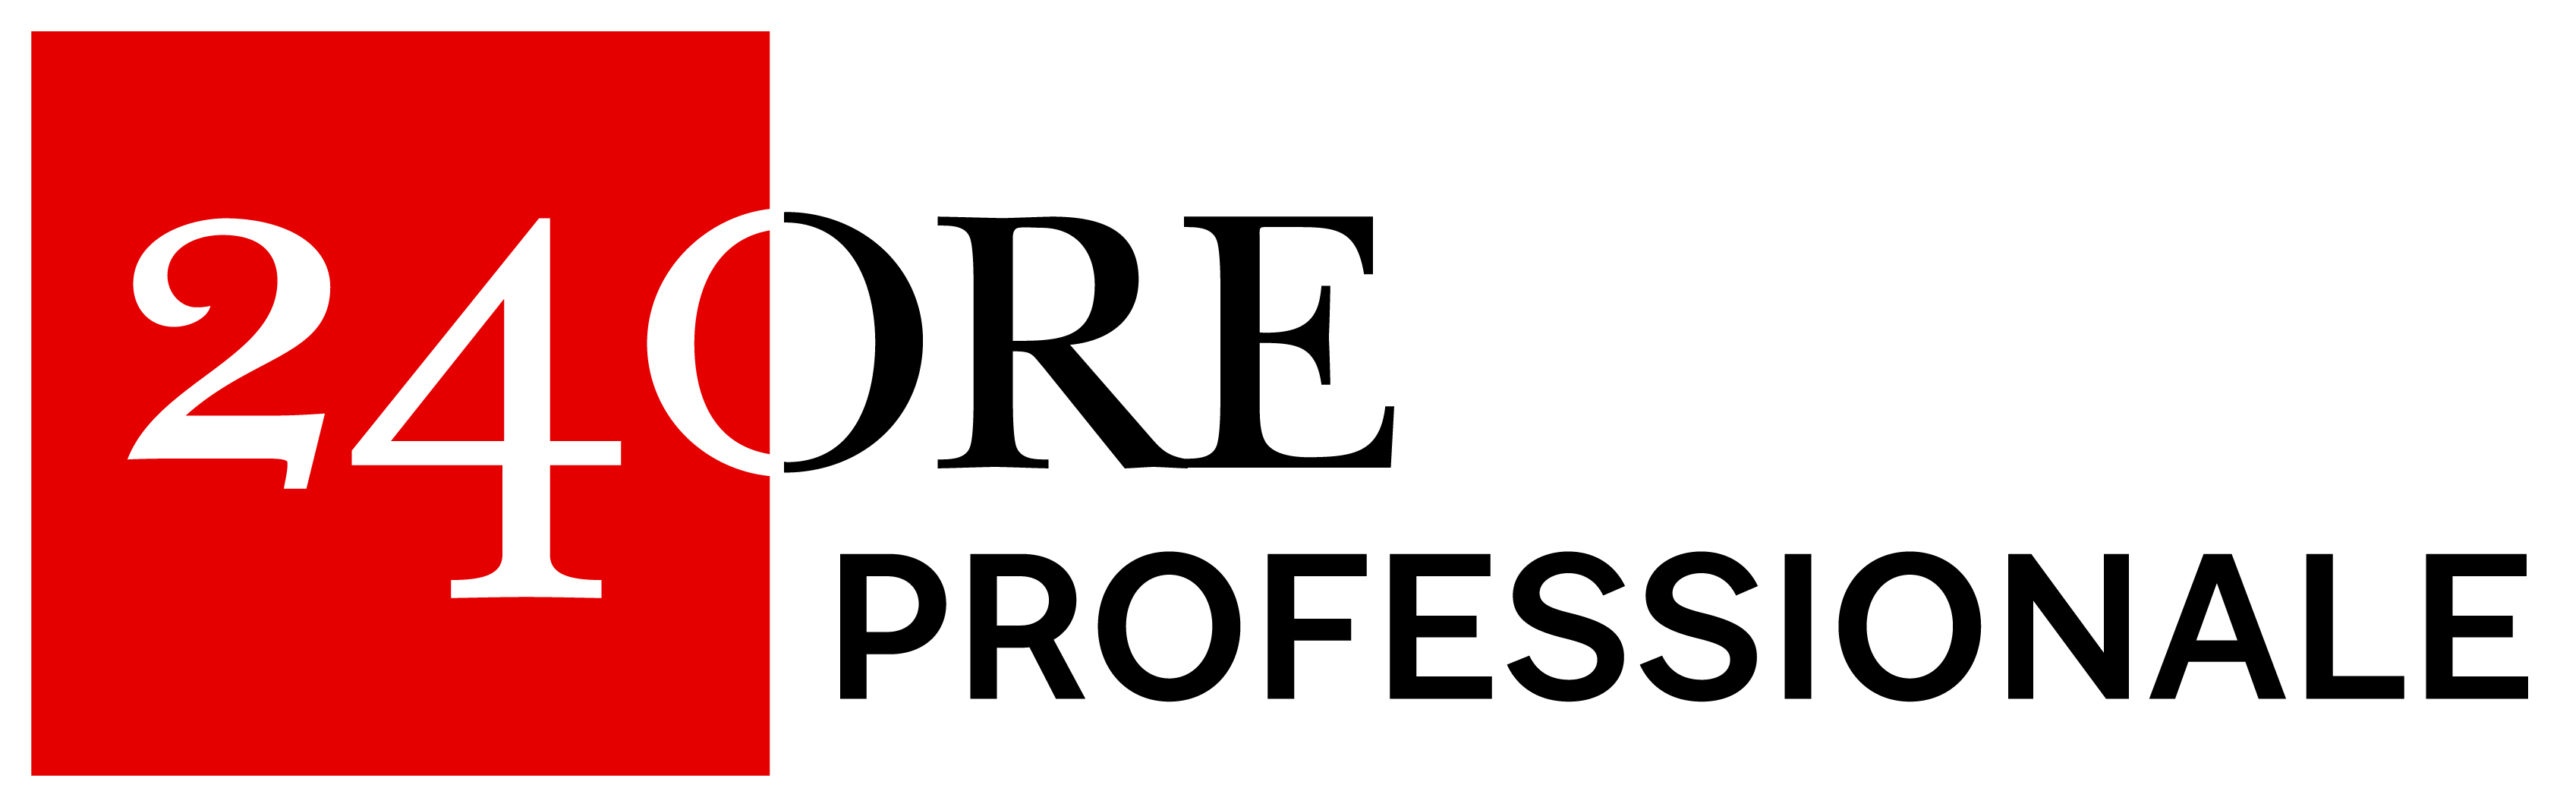 24ORE_Professionale_Logo_positivocolore